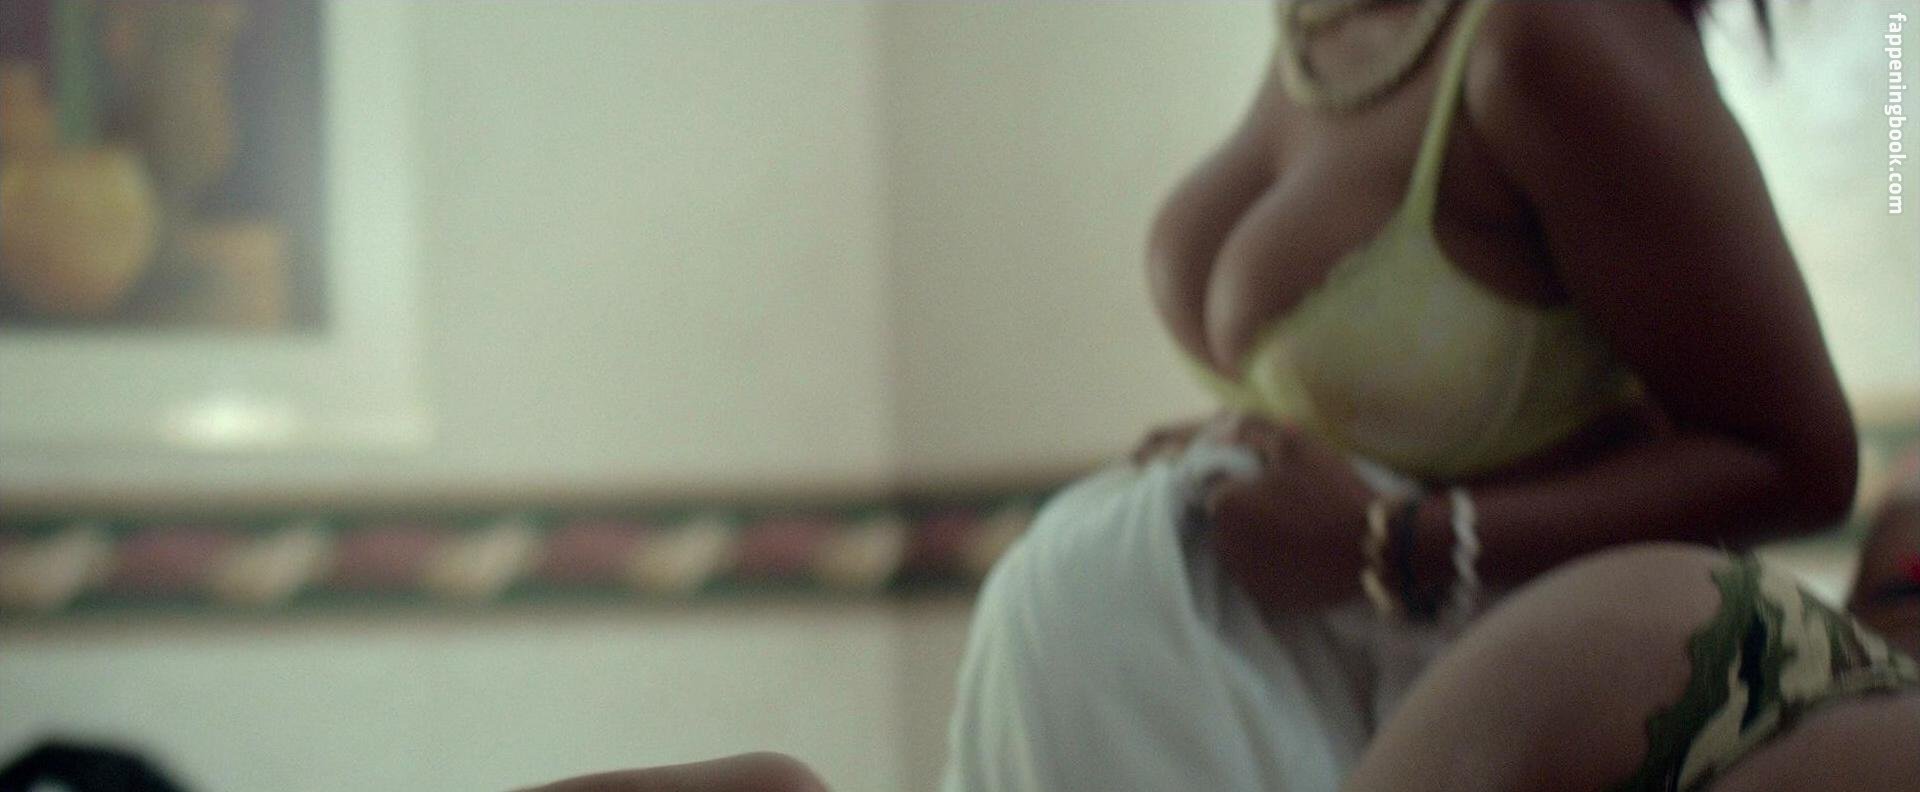 Hayley marie norman boobs